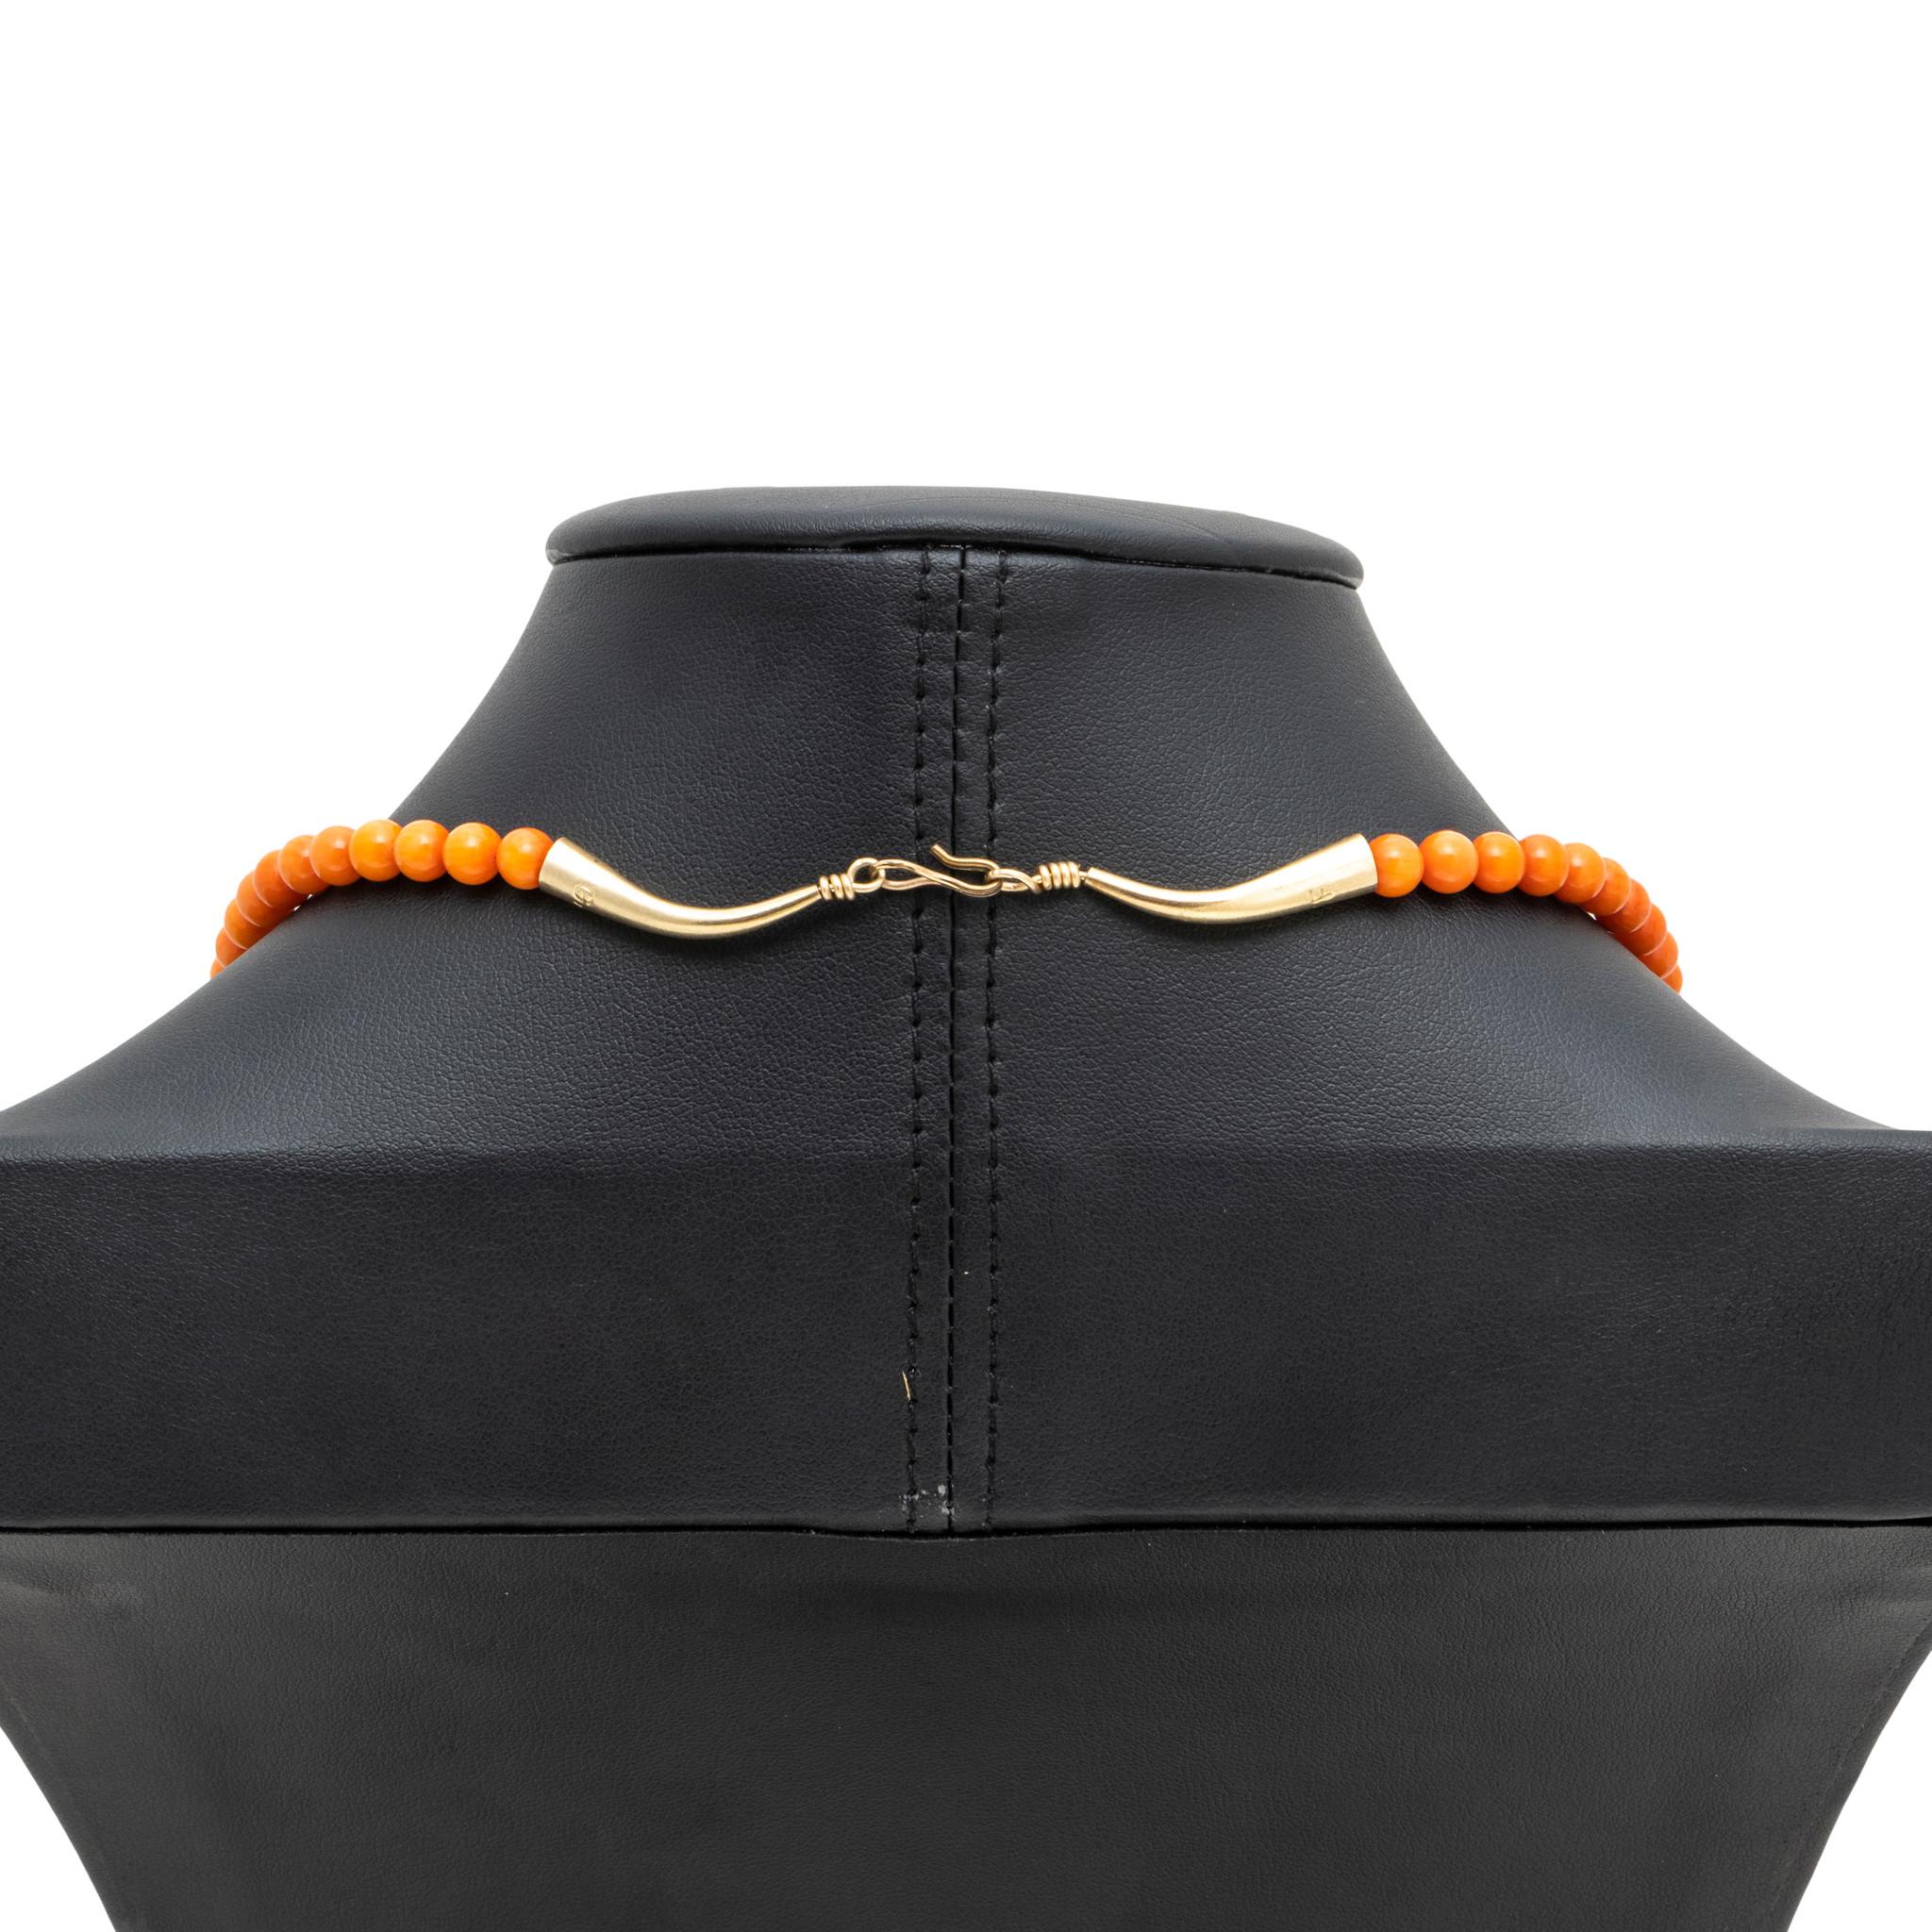 Navajo-Indianer-Halskette aus Korallenperlen mit 14kt vergoldeter Verlängerung und traditionellem Hakenverschluss. Korallenperlen sind rund und haben eine sanfte orange Farbe auf einem einzelnen Perlenstrang. Elegantes, aber einfaches Halsband, das